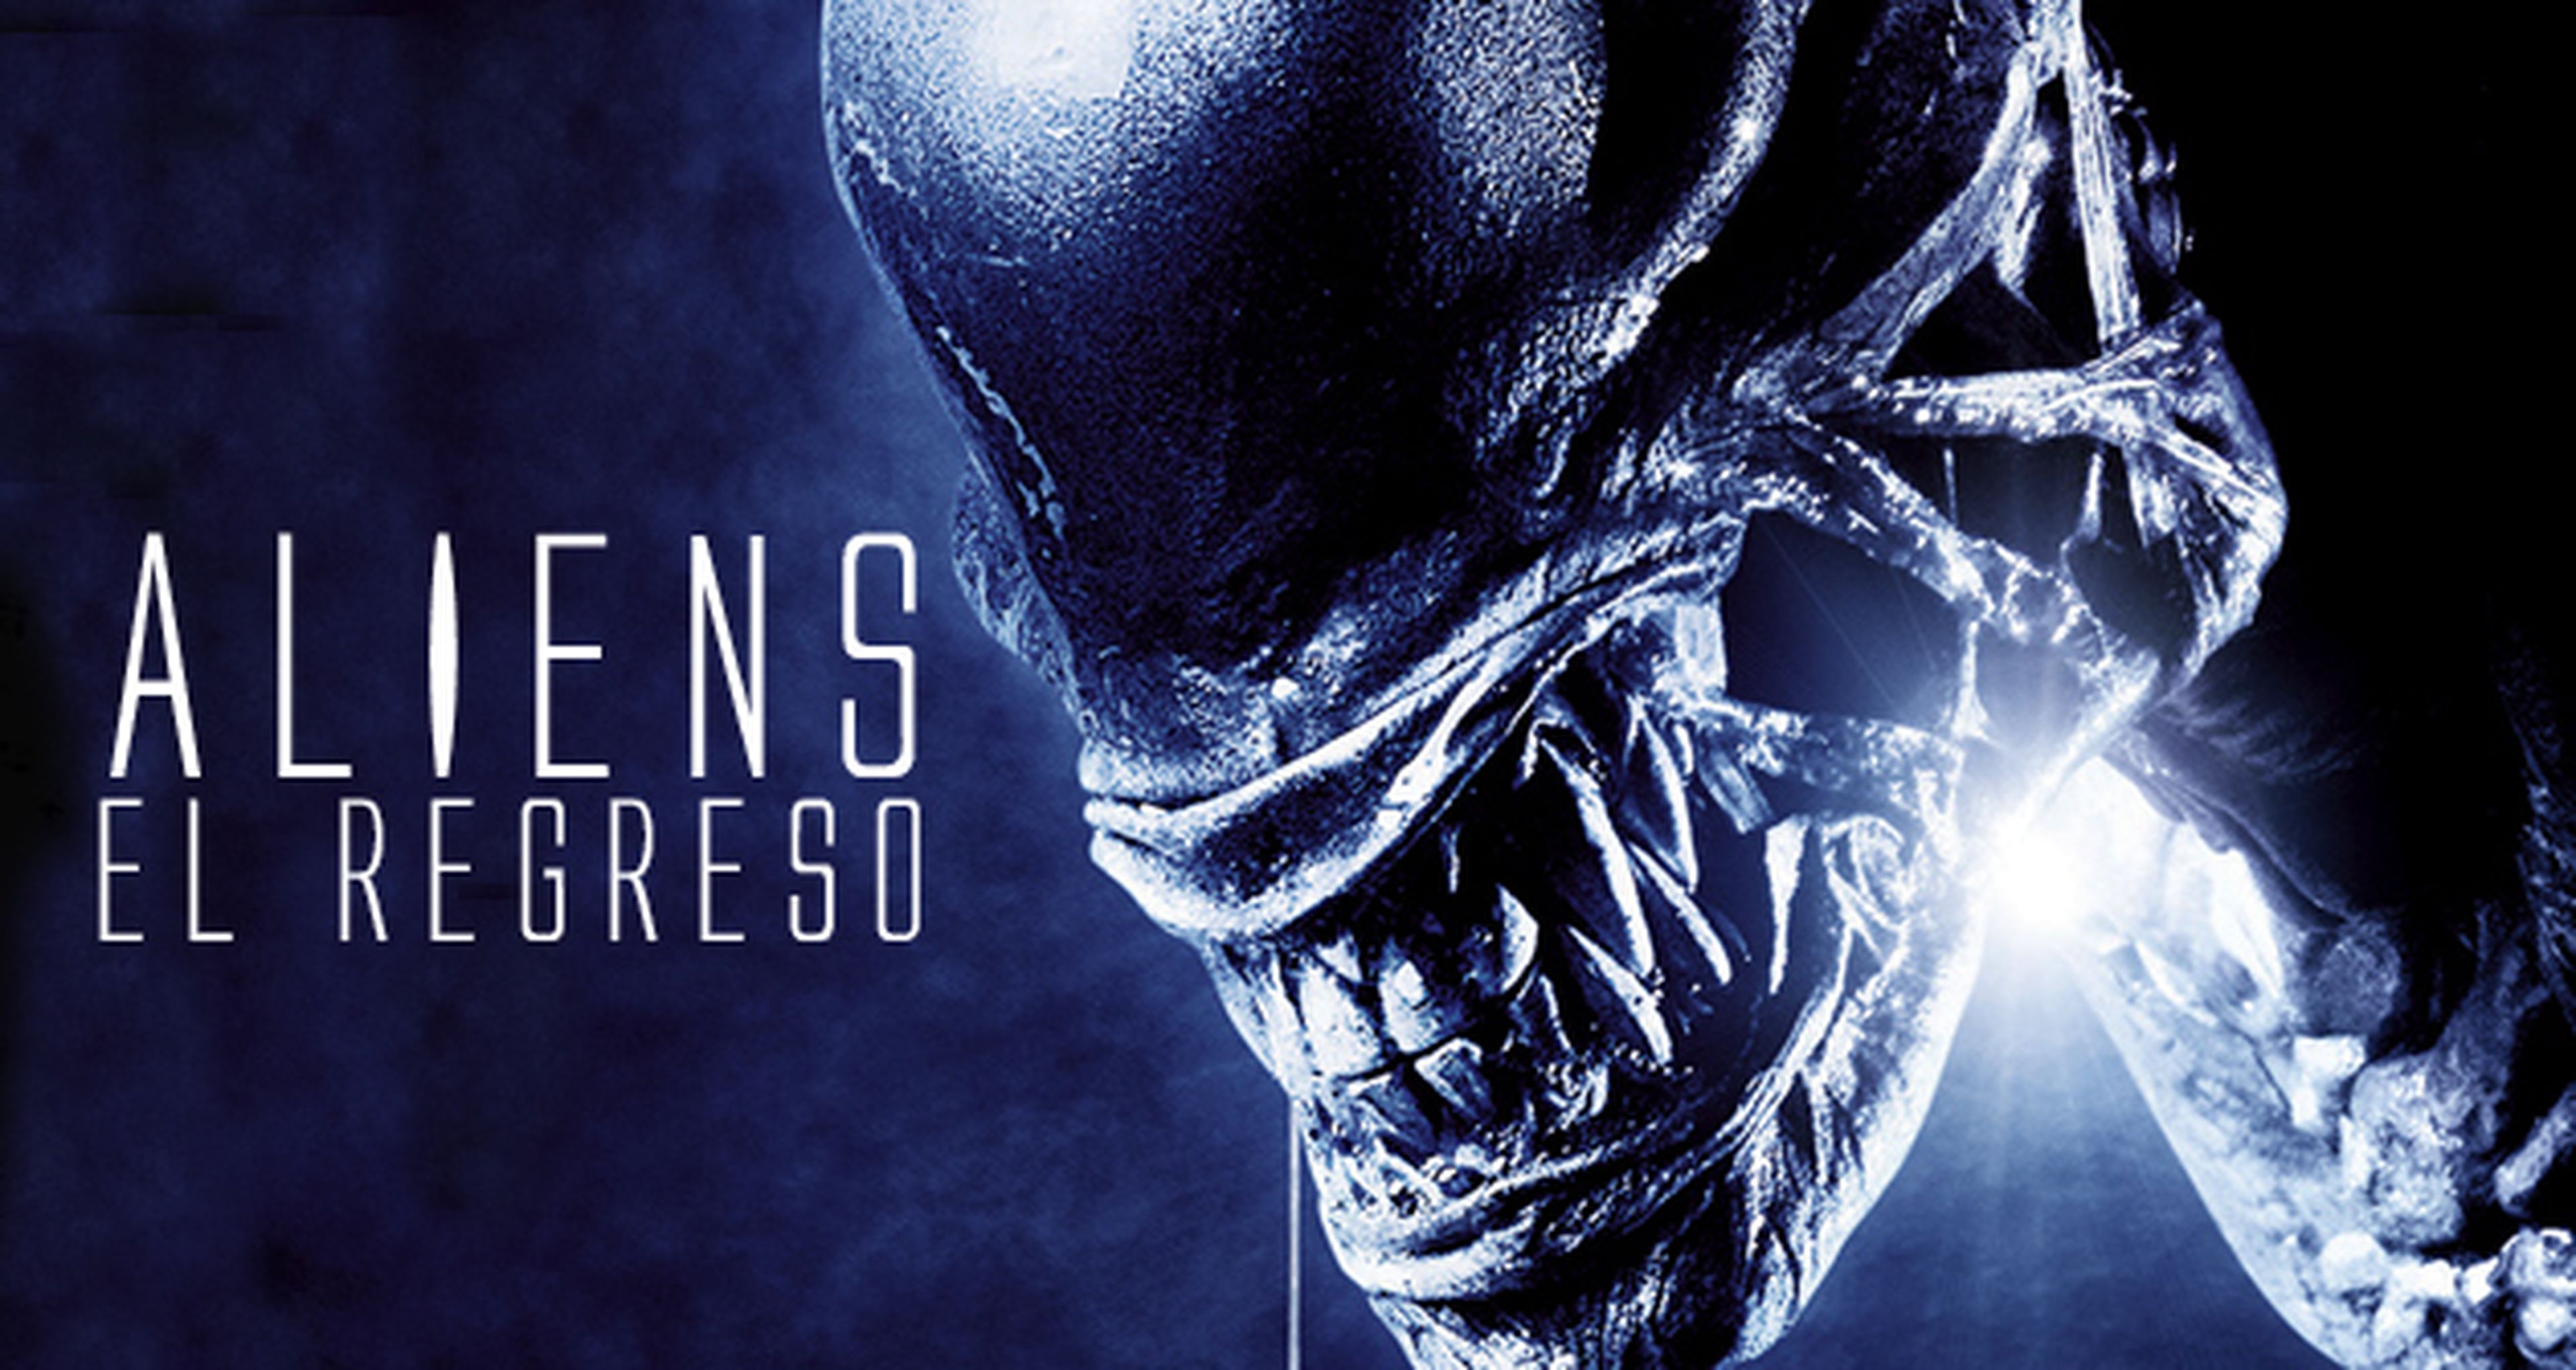 Cine de ciencia ficción: Aliens, El regreso